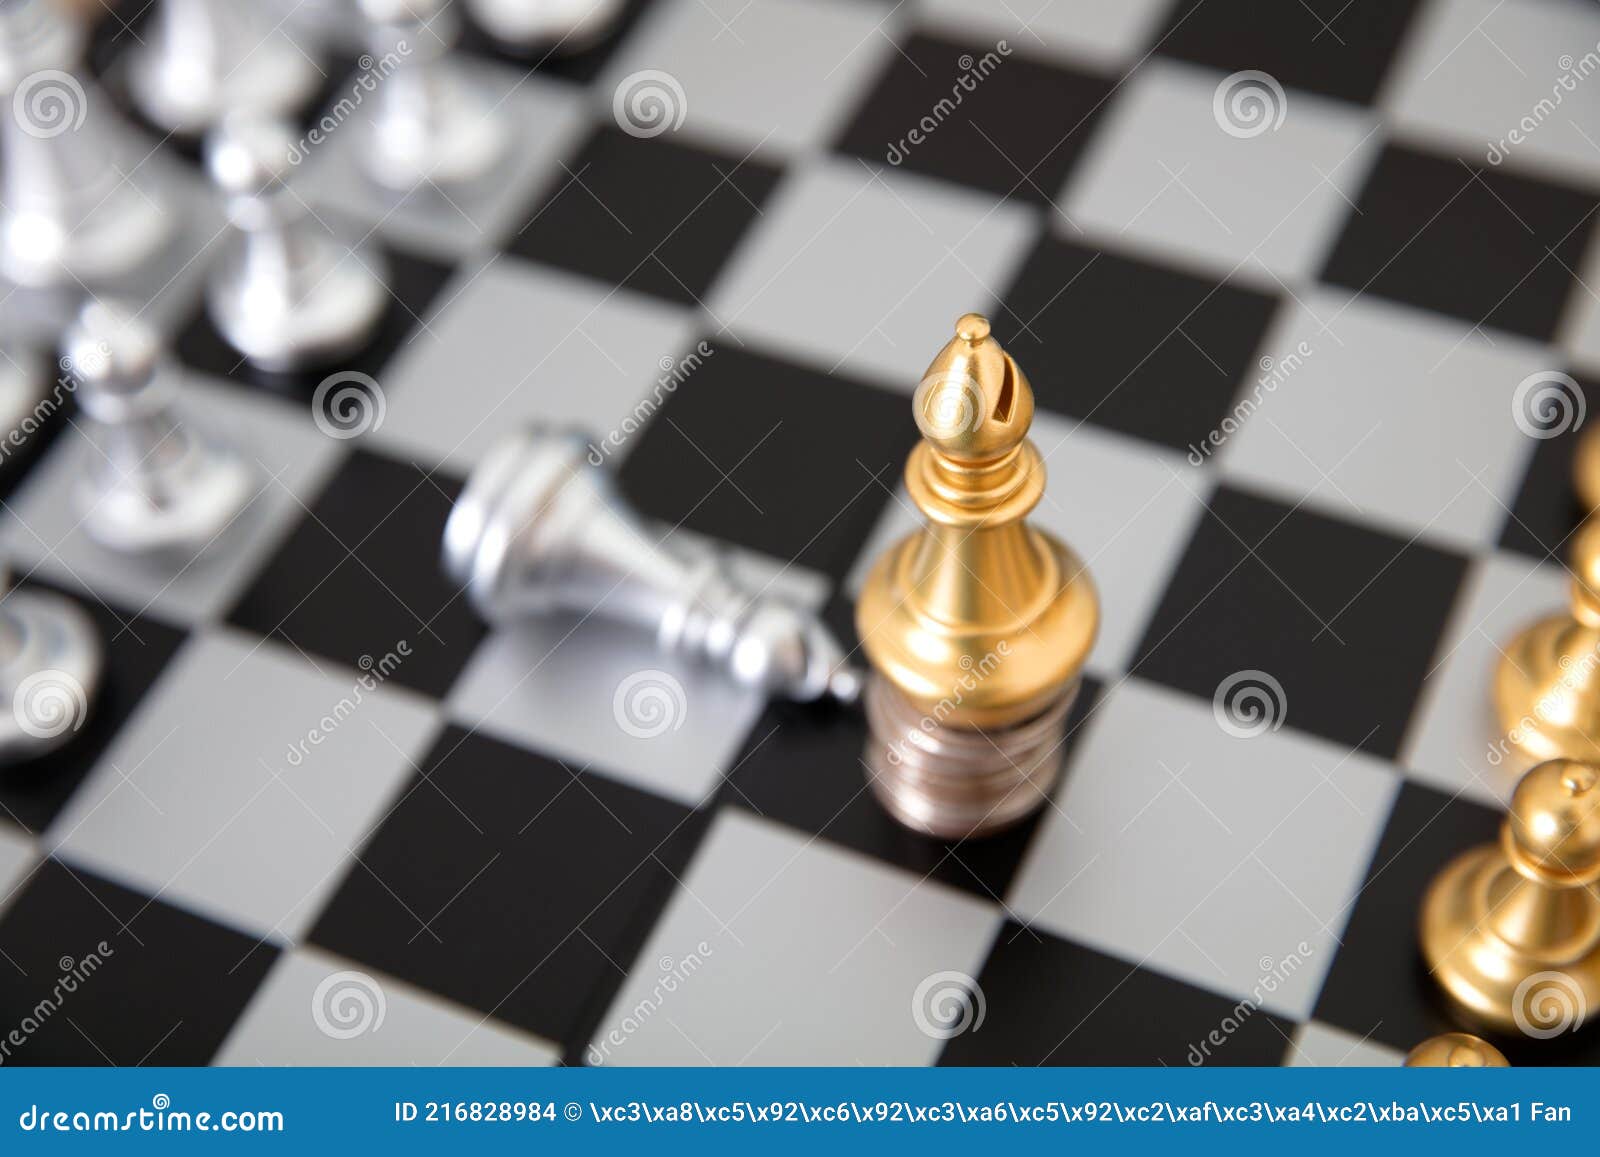 A peça de xadrez de peão de ouro que se destaca do grupo de peças de xadrez  de peão de prata no tabuleiro de xadrez em fundo branco se destaca da  multidão